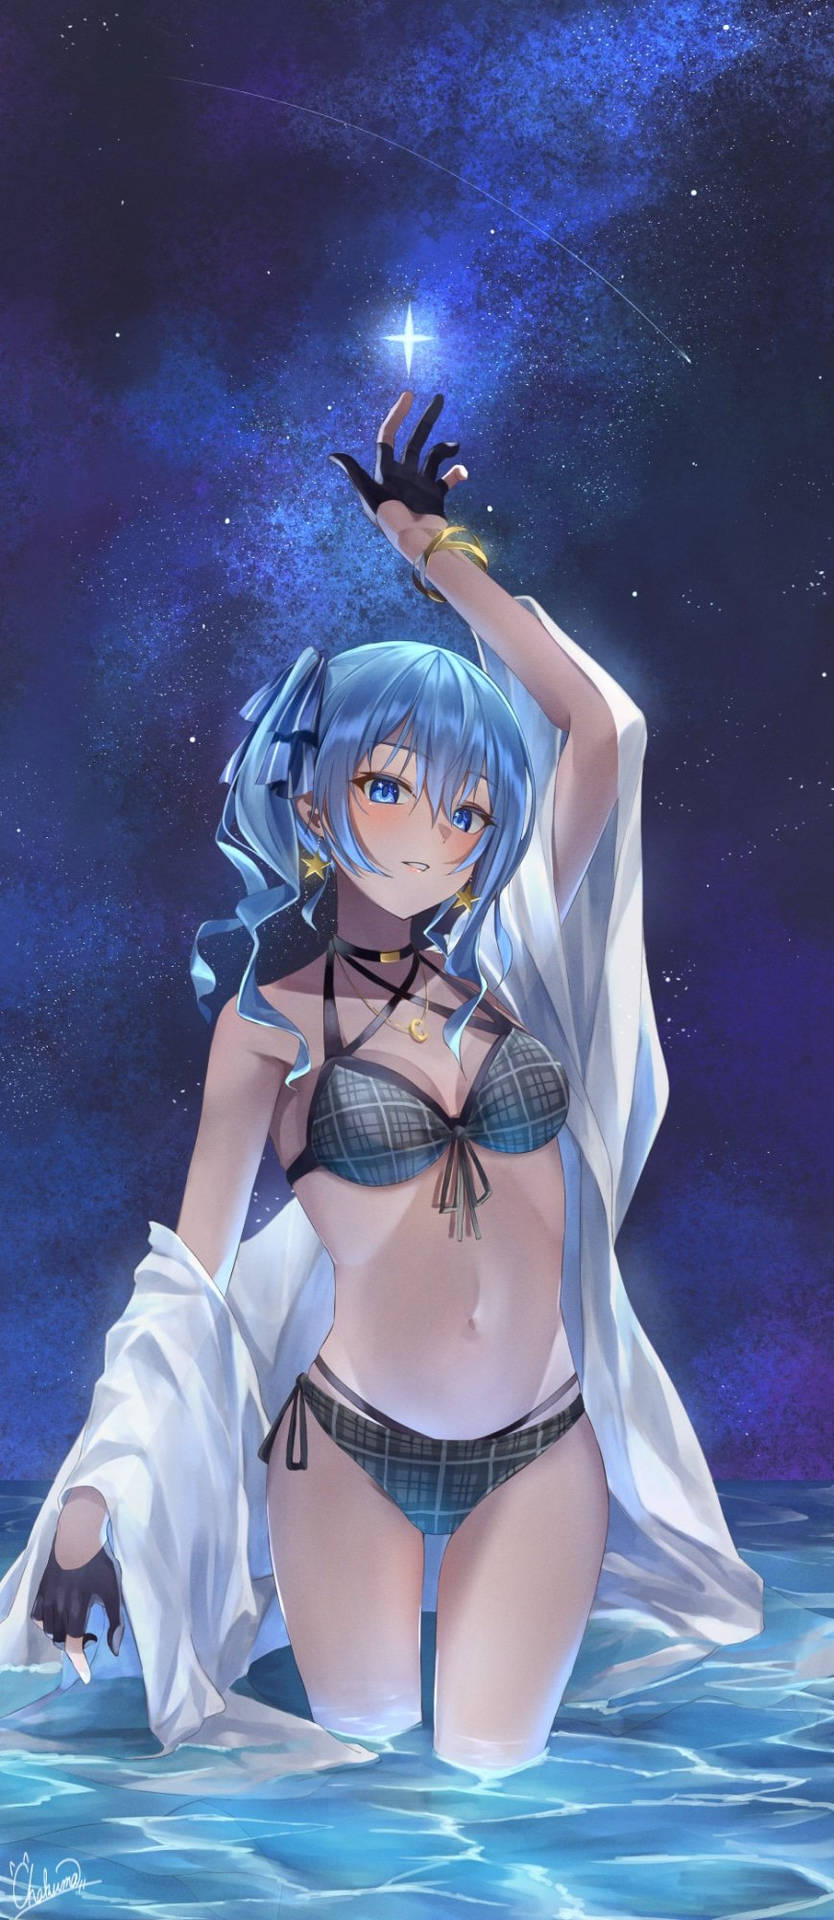 Download Anime Girl In Bikini At Night Wallpaper 